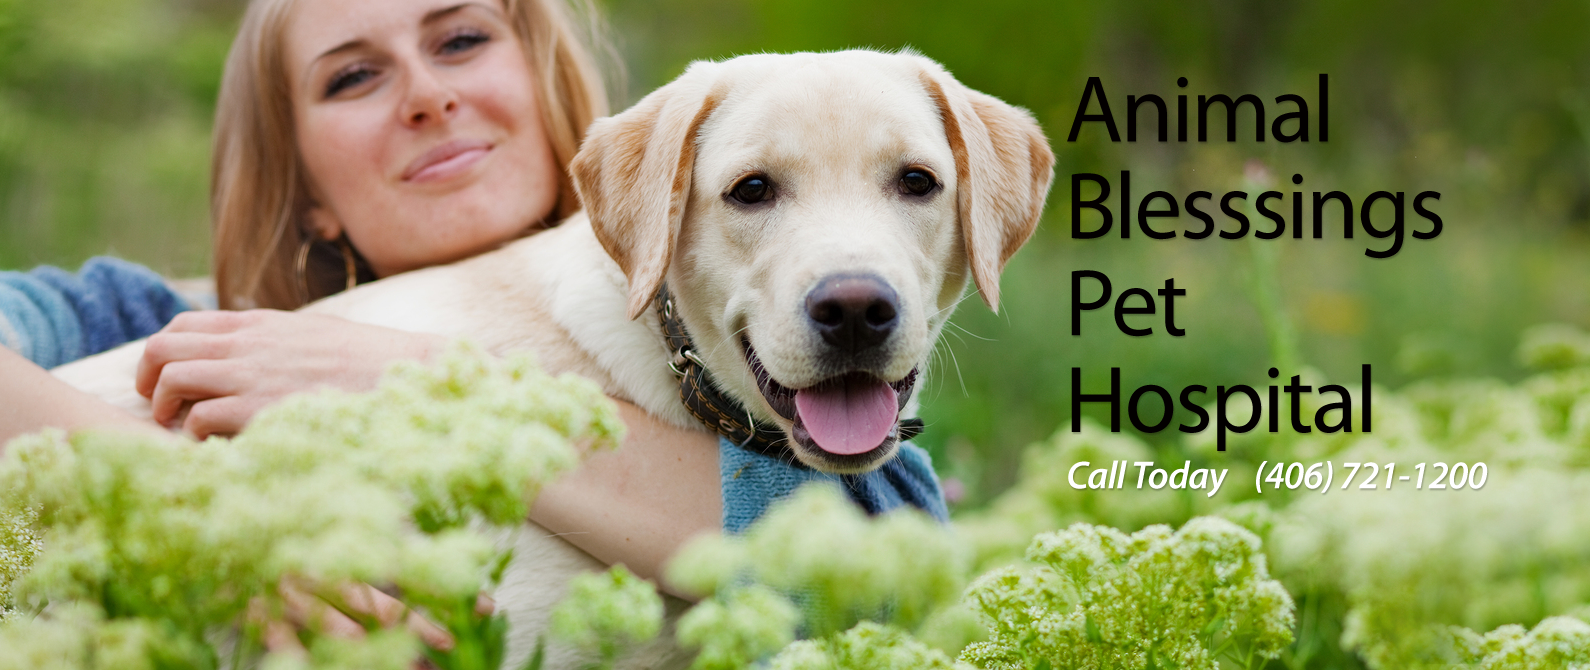 Animal Blessings Pet Hospital